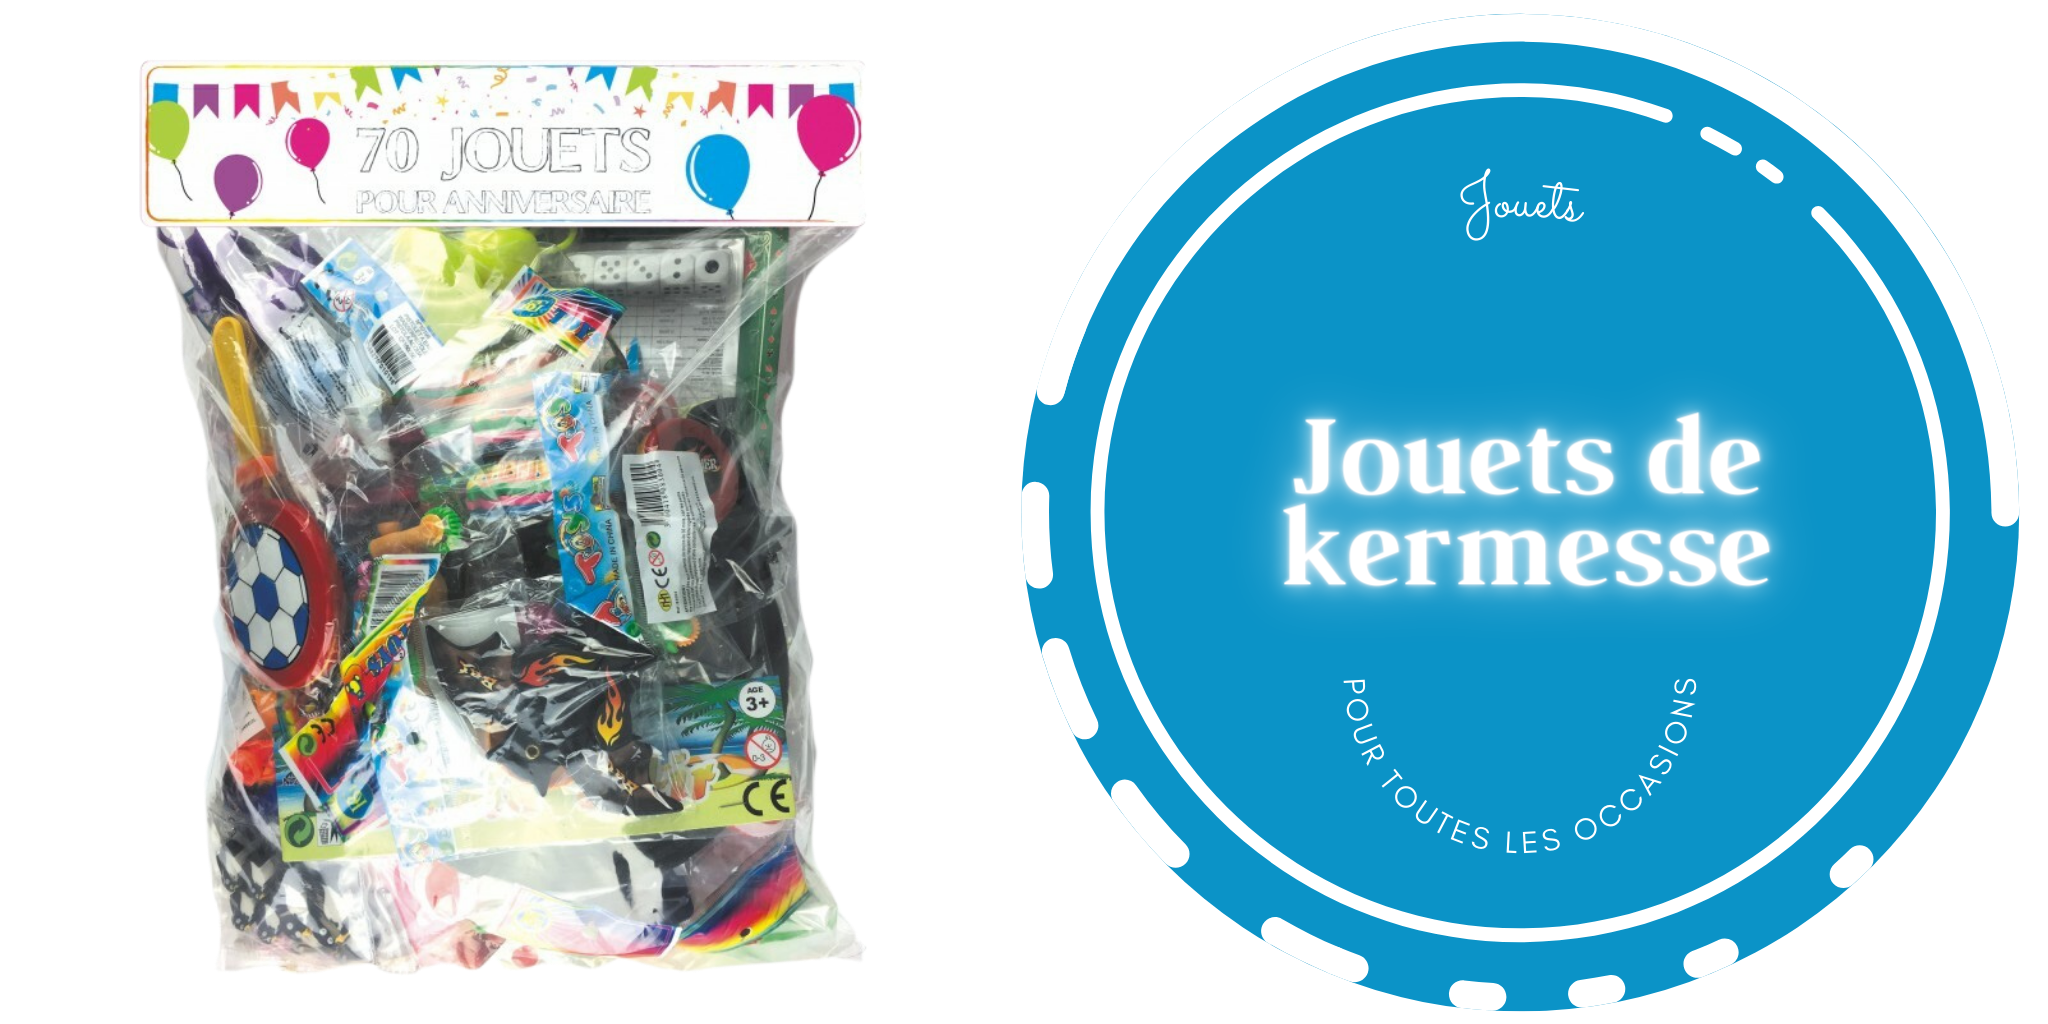 Lot 50 Jouets Kermesse - Top Prix sur le lot de jouets kermesses